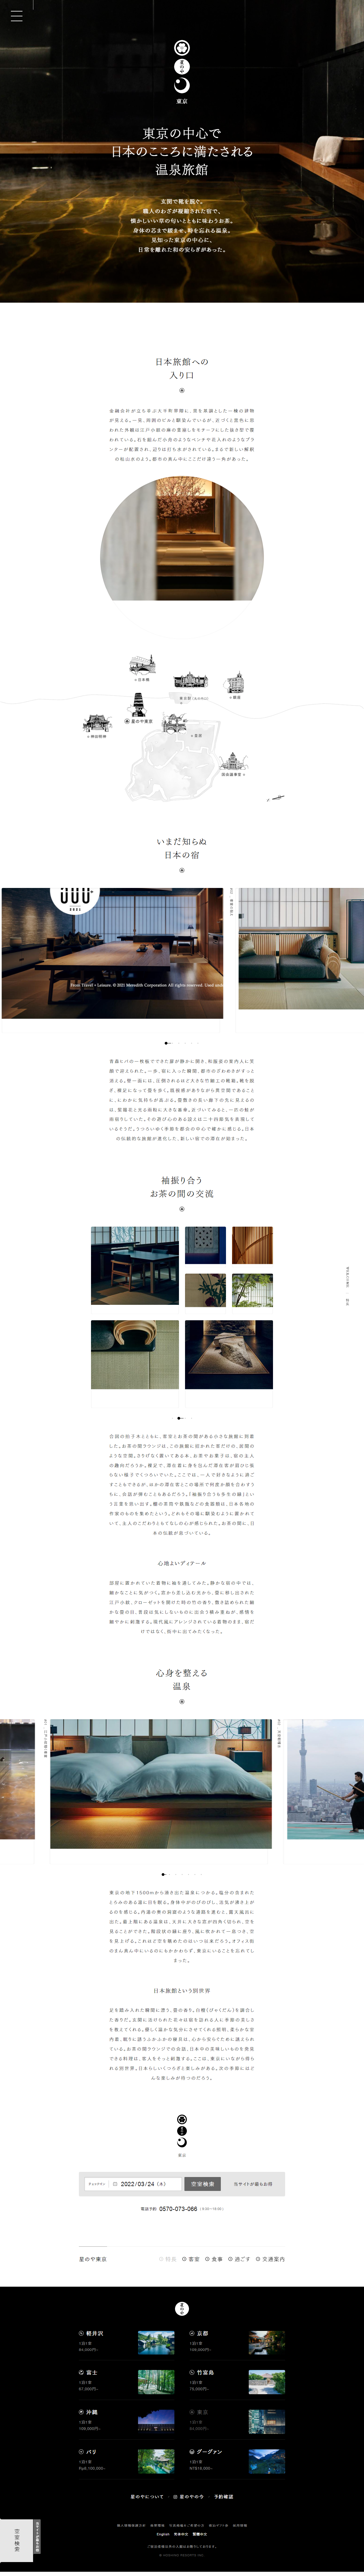 ホテル・旅館 ホームページ制作 WEBデザイン参考ギャラリー 星のや東京